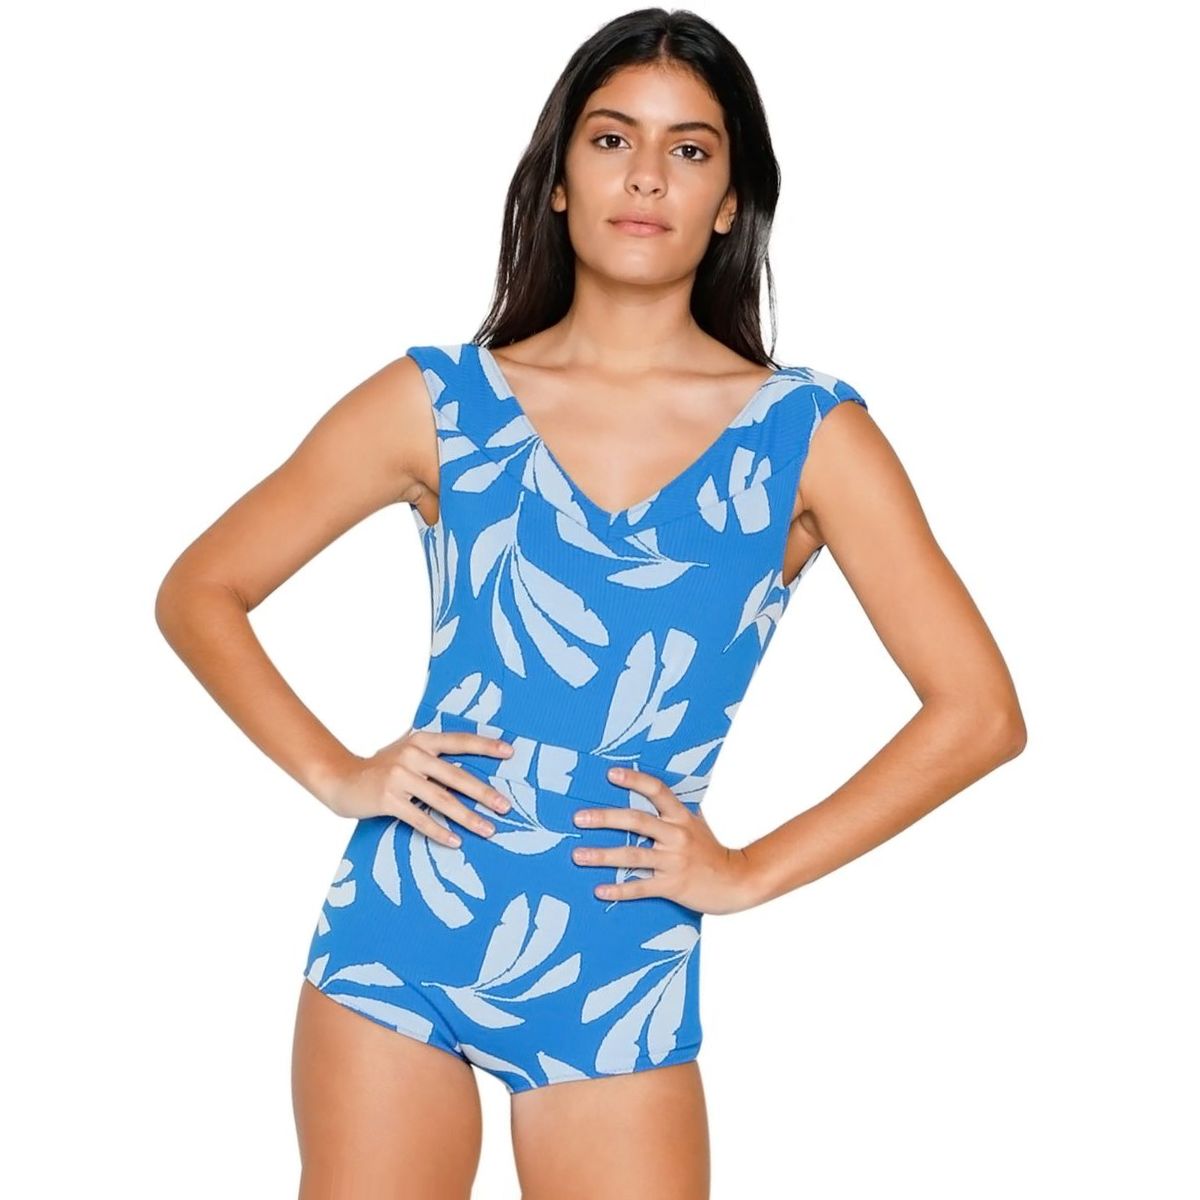 Seea Swimwear Frida One-Piece Swimsuit - Women's